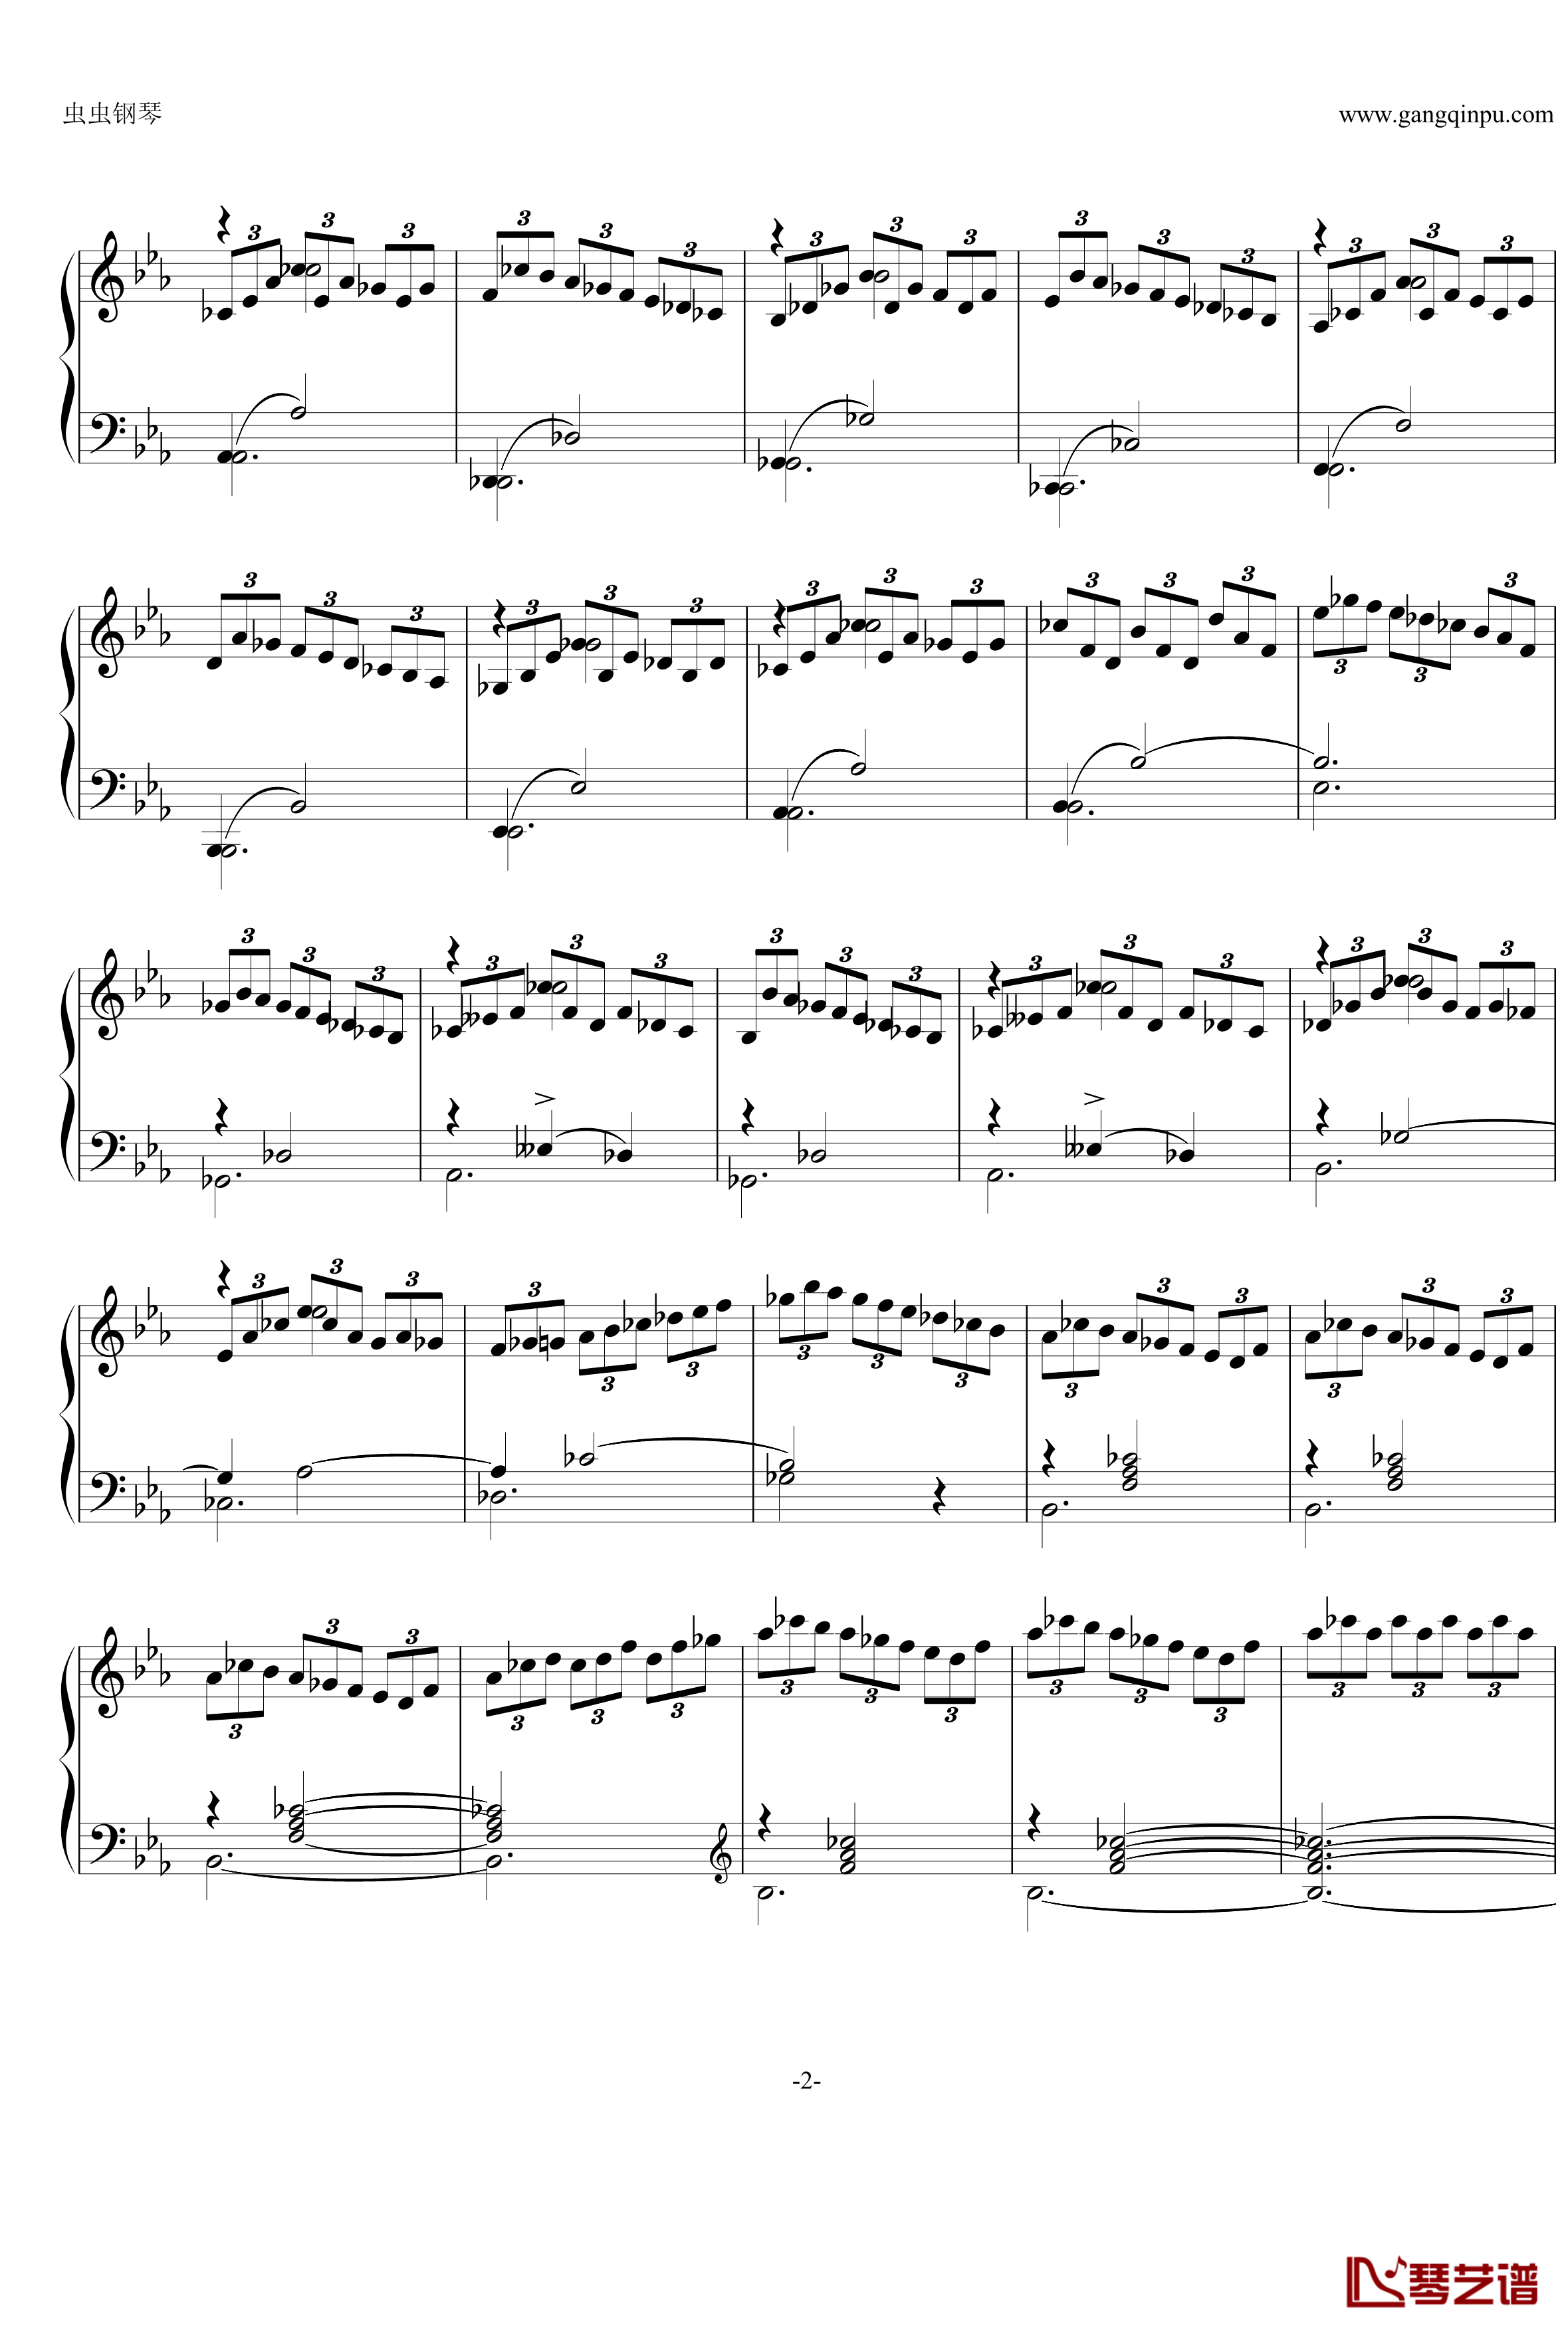 即兴曲Op.90 No.2钢琴谱-舒伯特-又名D899 No.22